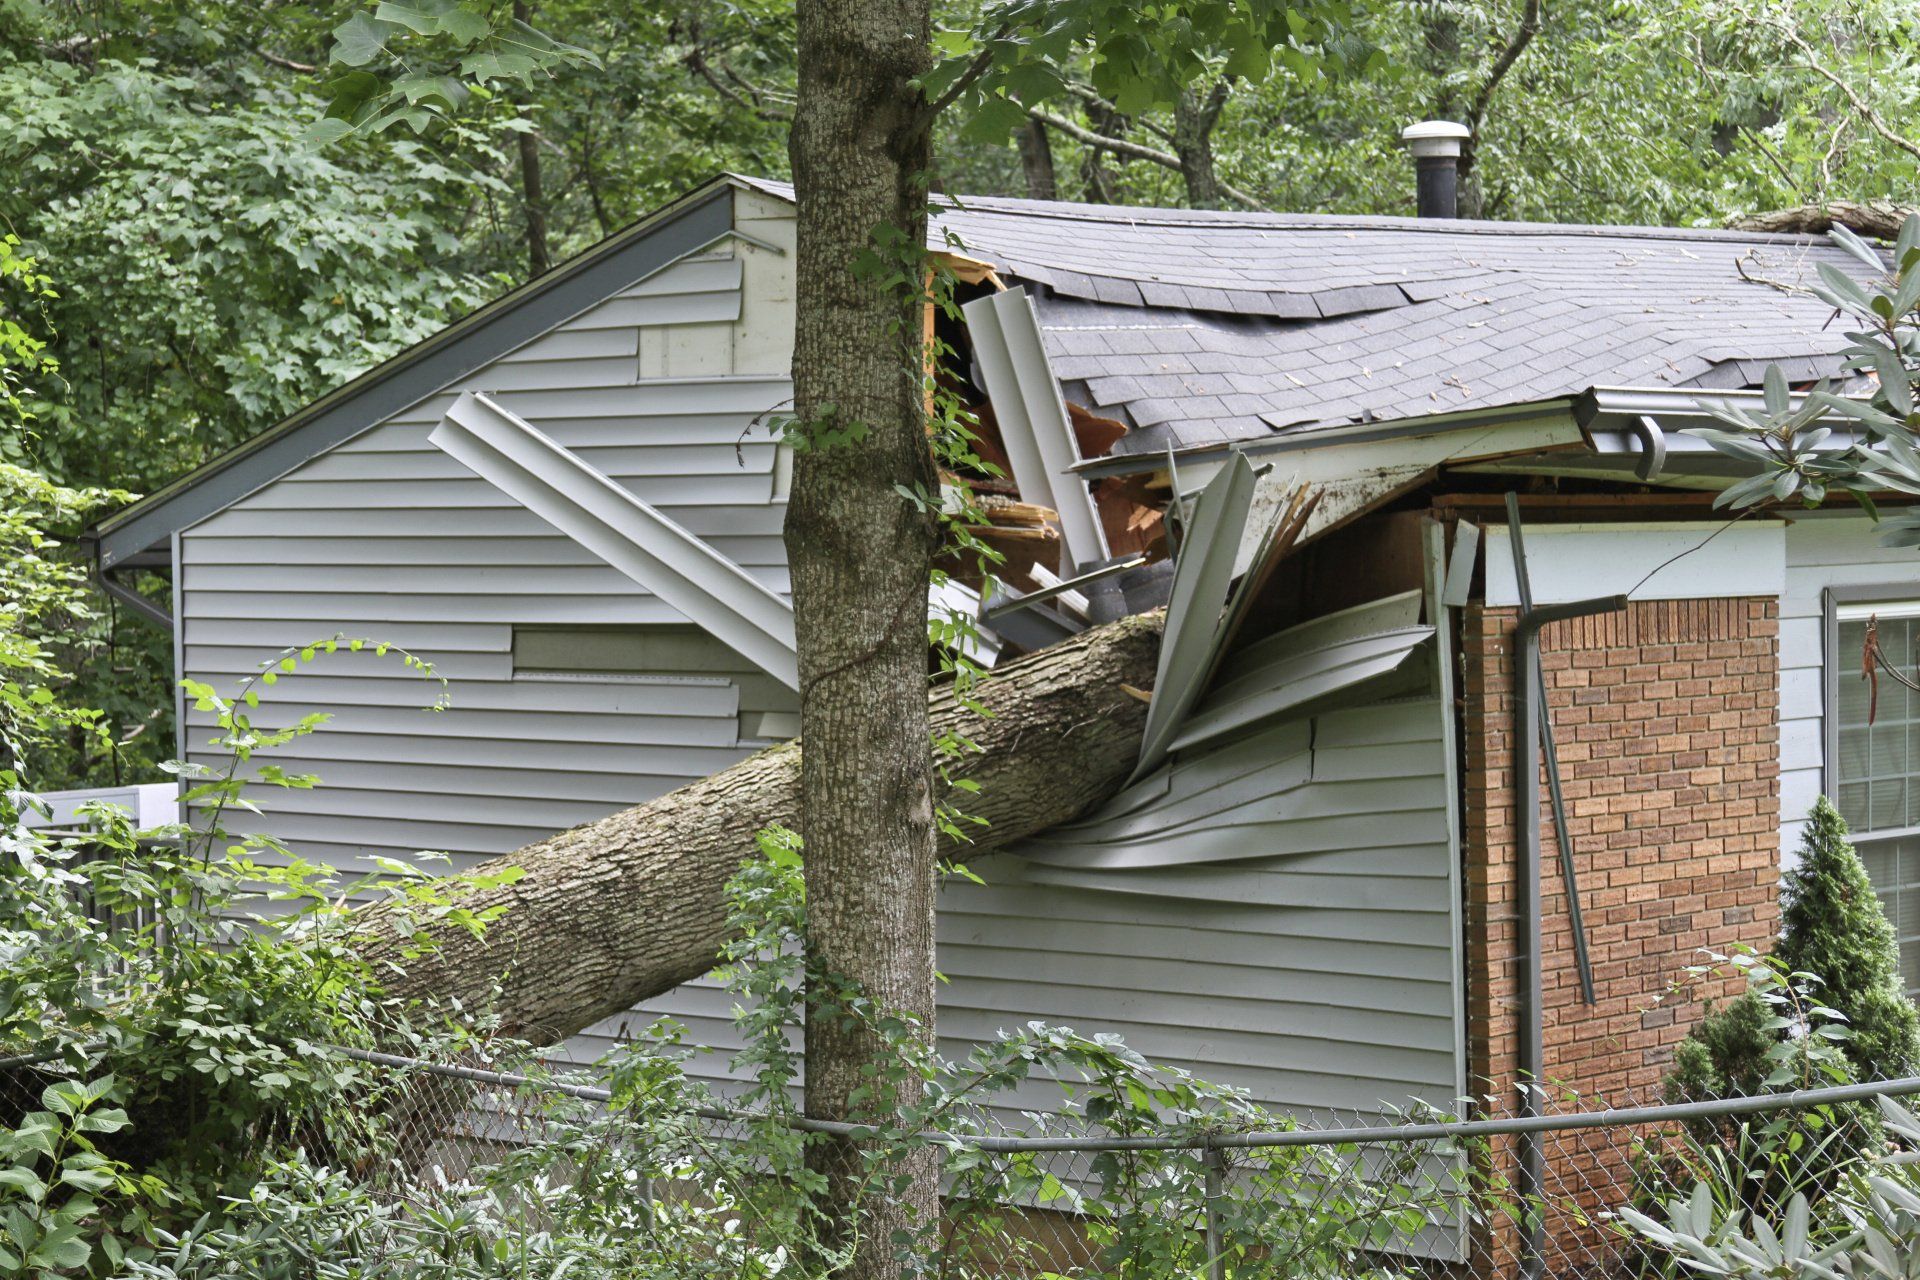 oak tree damaging home's roof